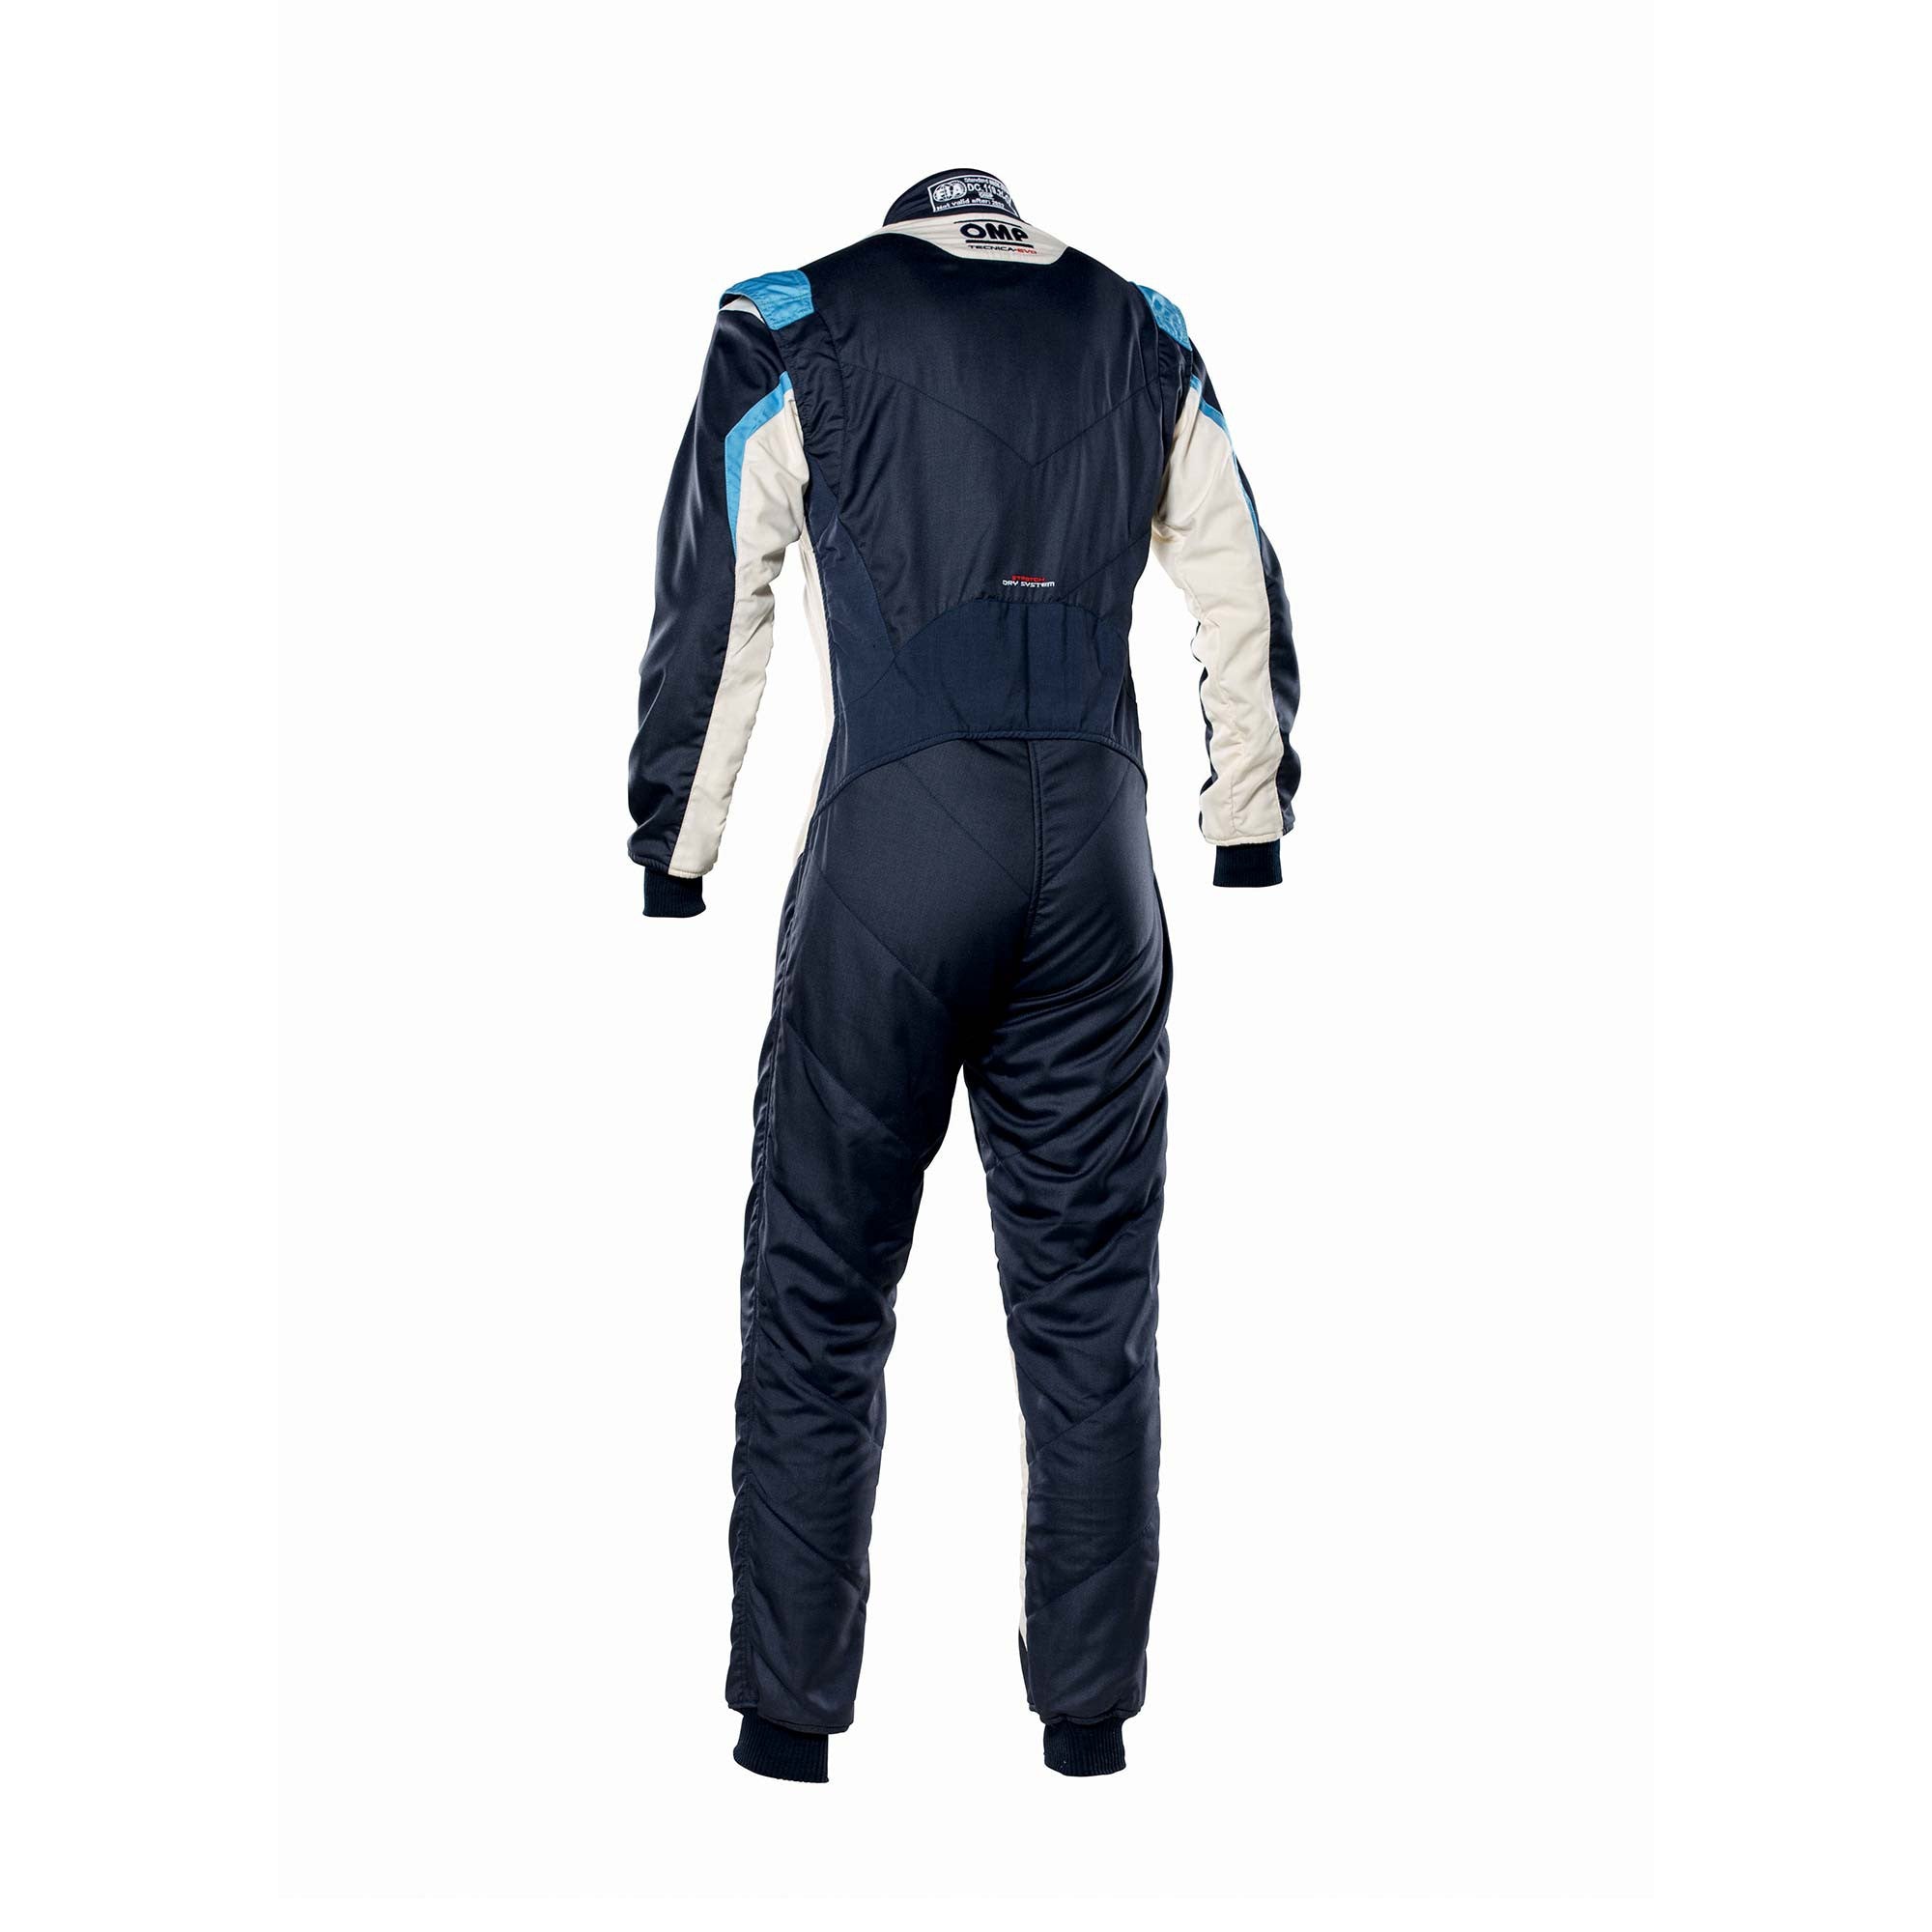 OMP IA0-1859-B01-246-62 Racing suit TECNICA EVO MY2021, FIA 8856-2018, navy blue/white/grey/cyan, size 62 Photo-1 